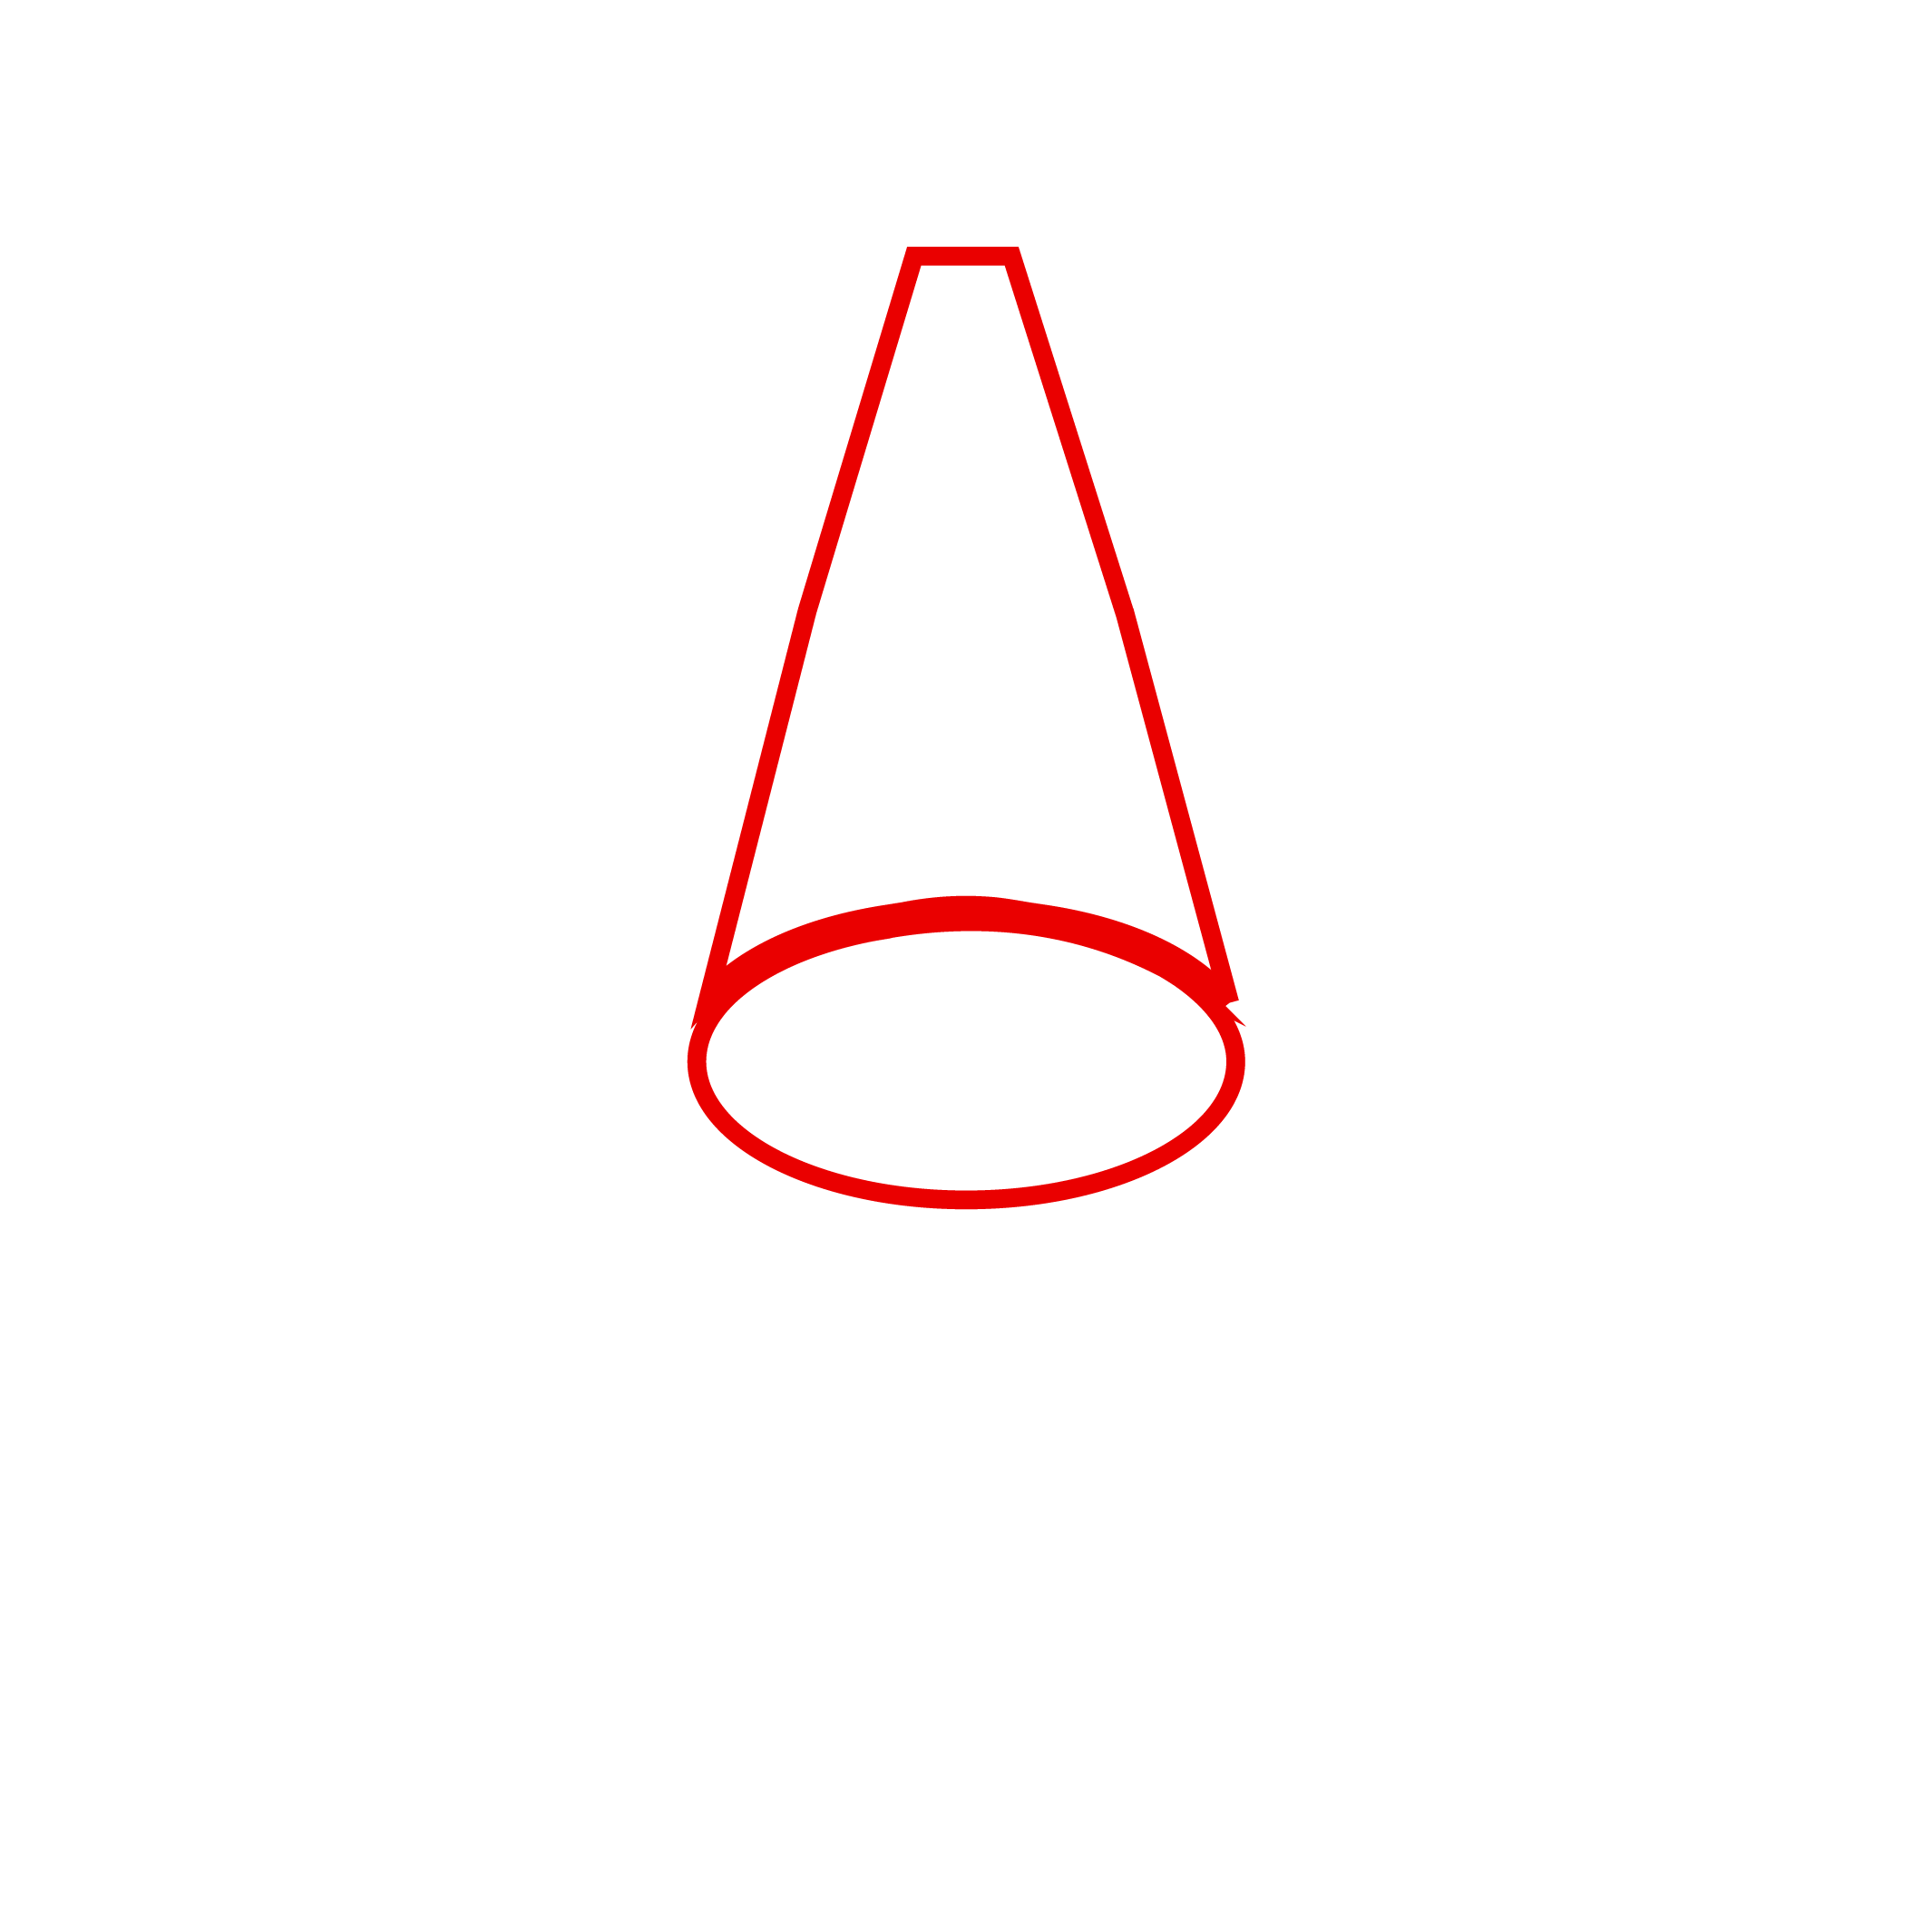 Showcase product